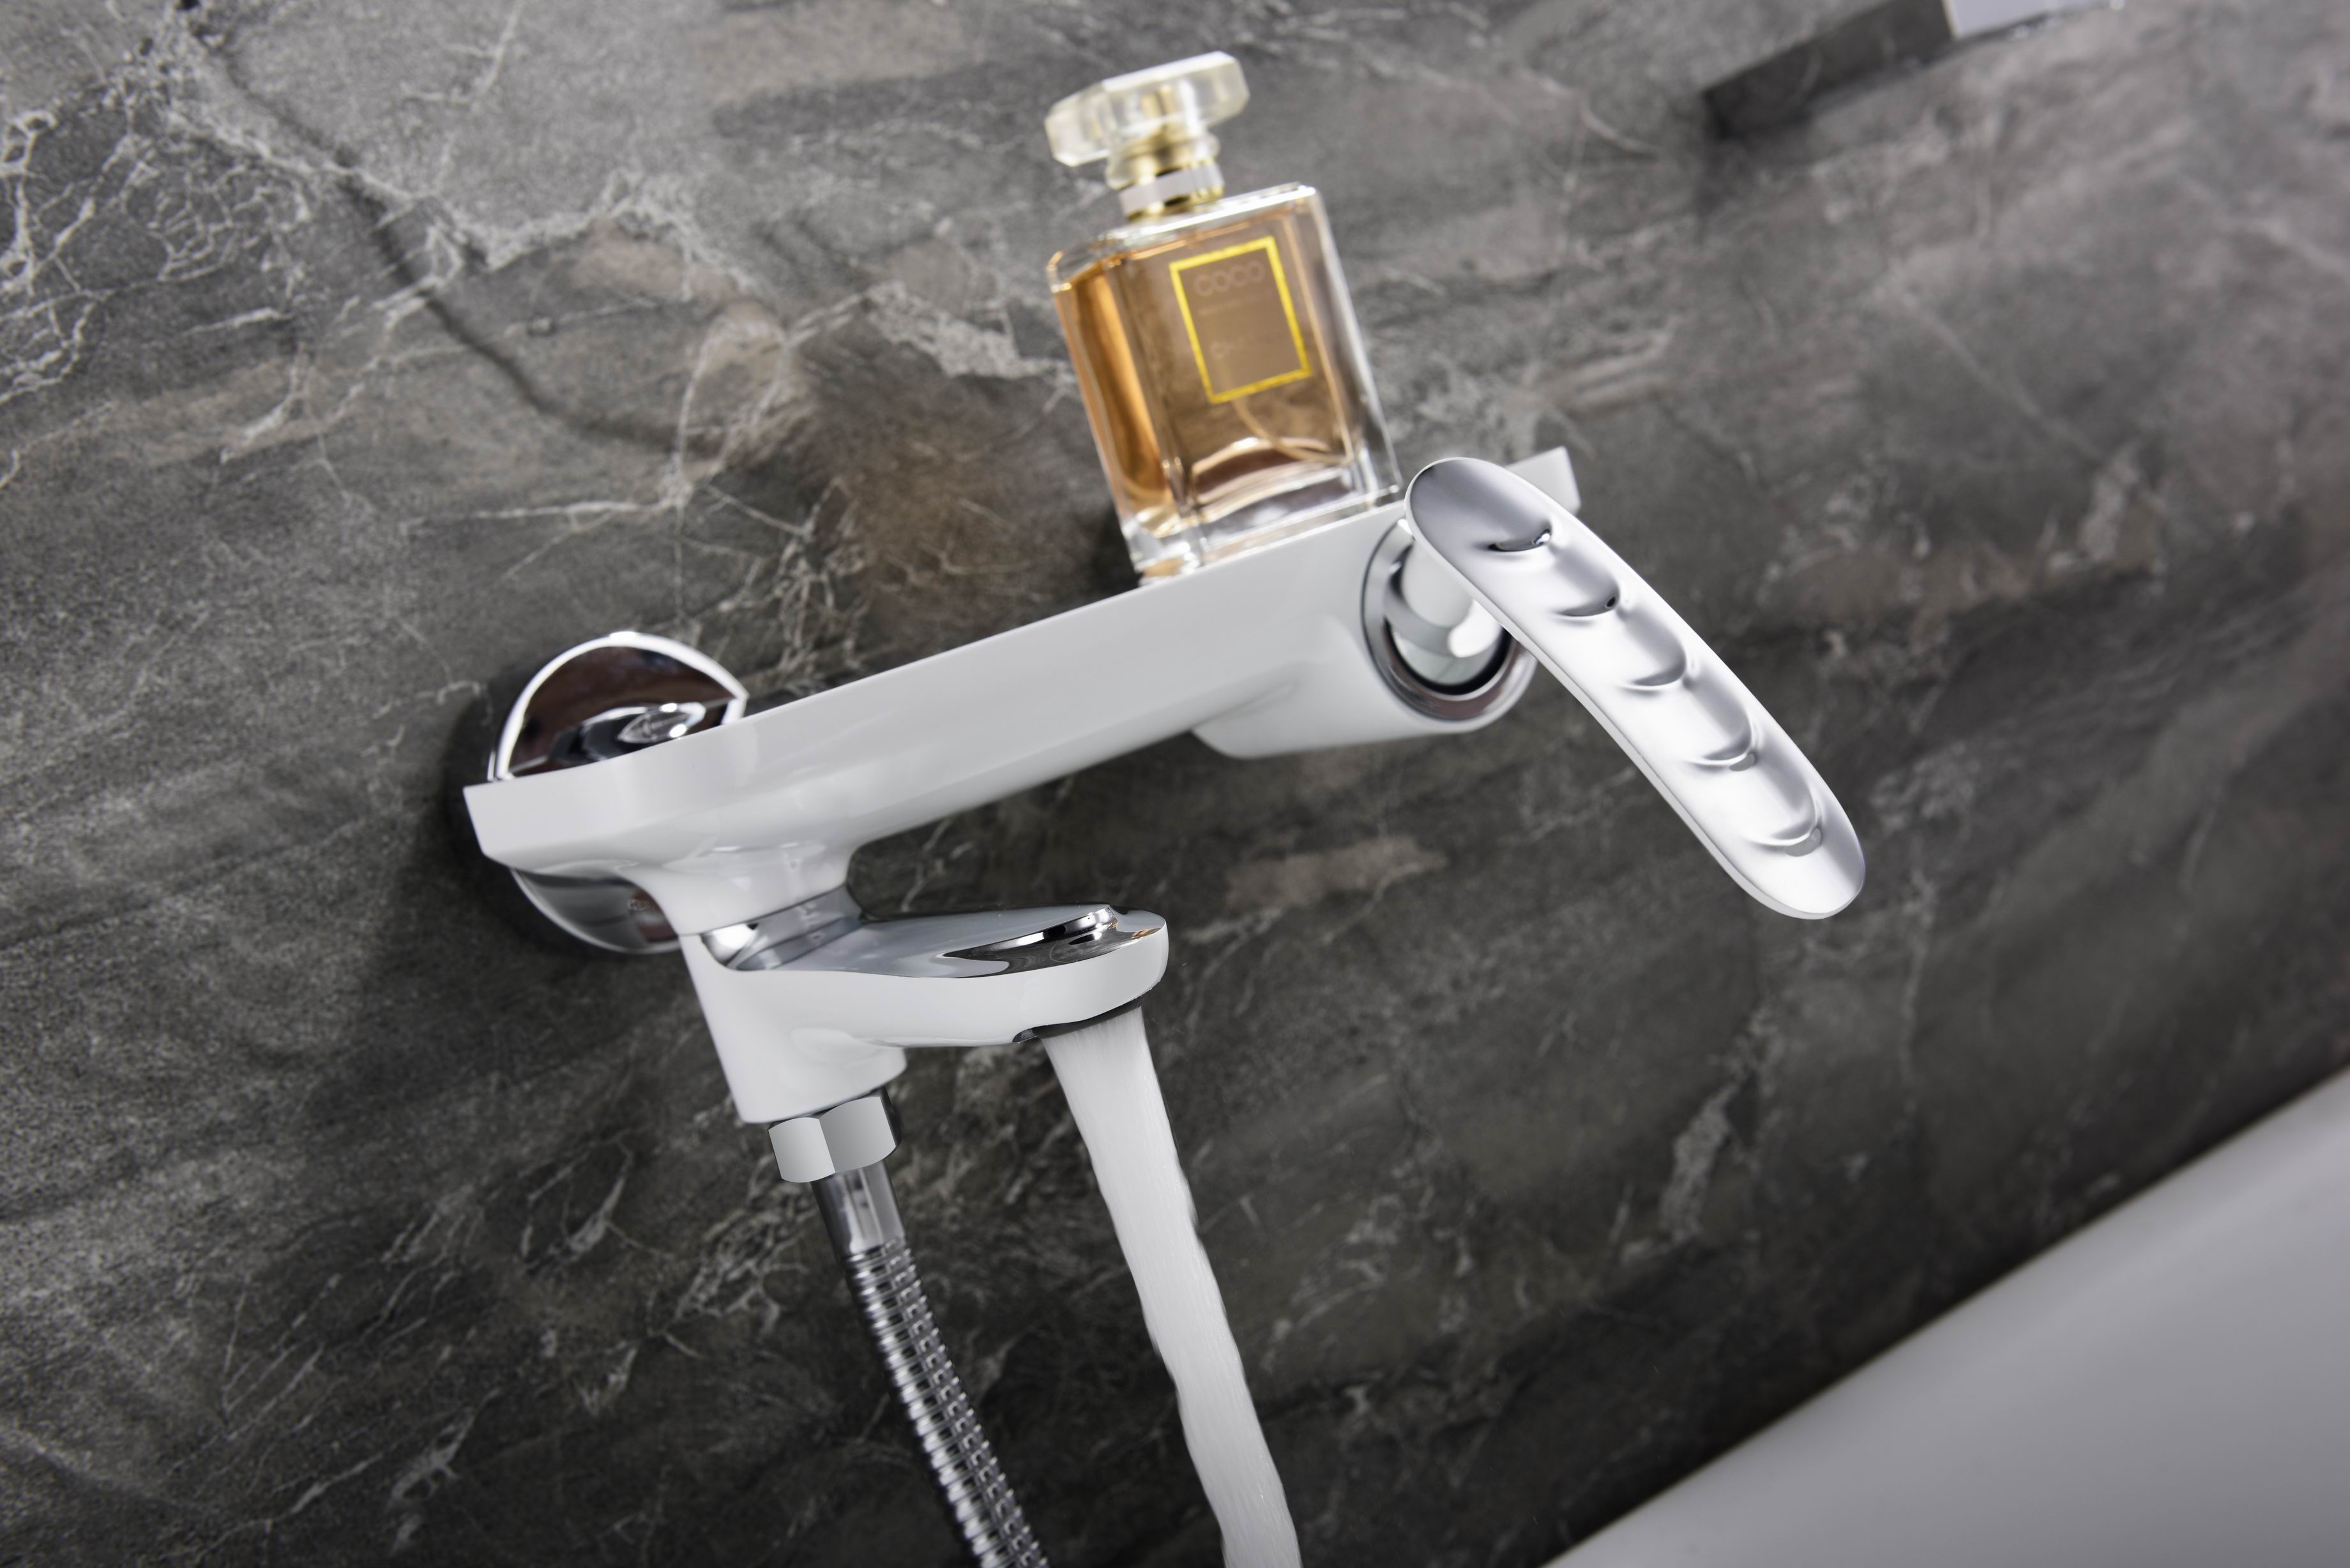 Hot Sale Special Complete Bath Brass Chrome Shower Faucet Set Robin Douche